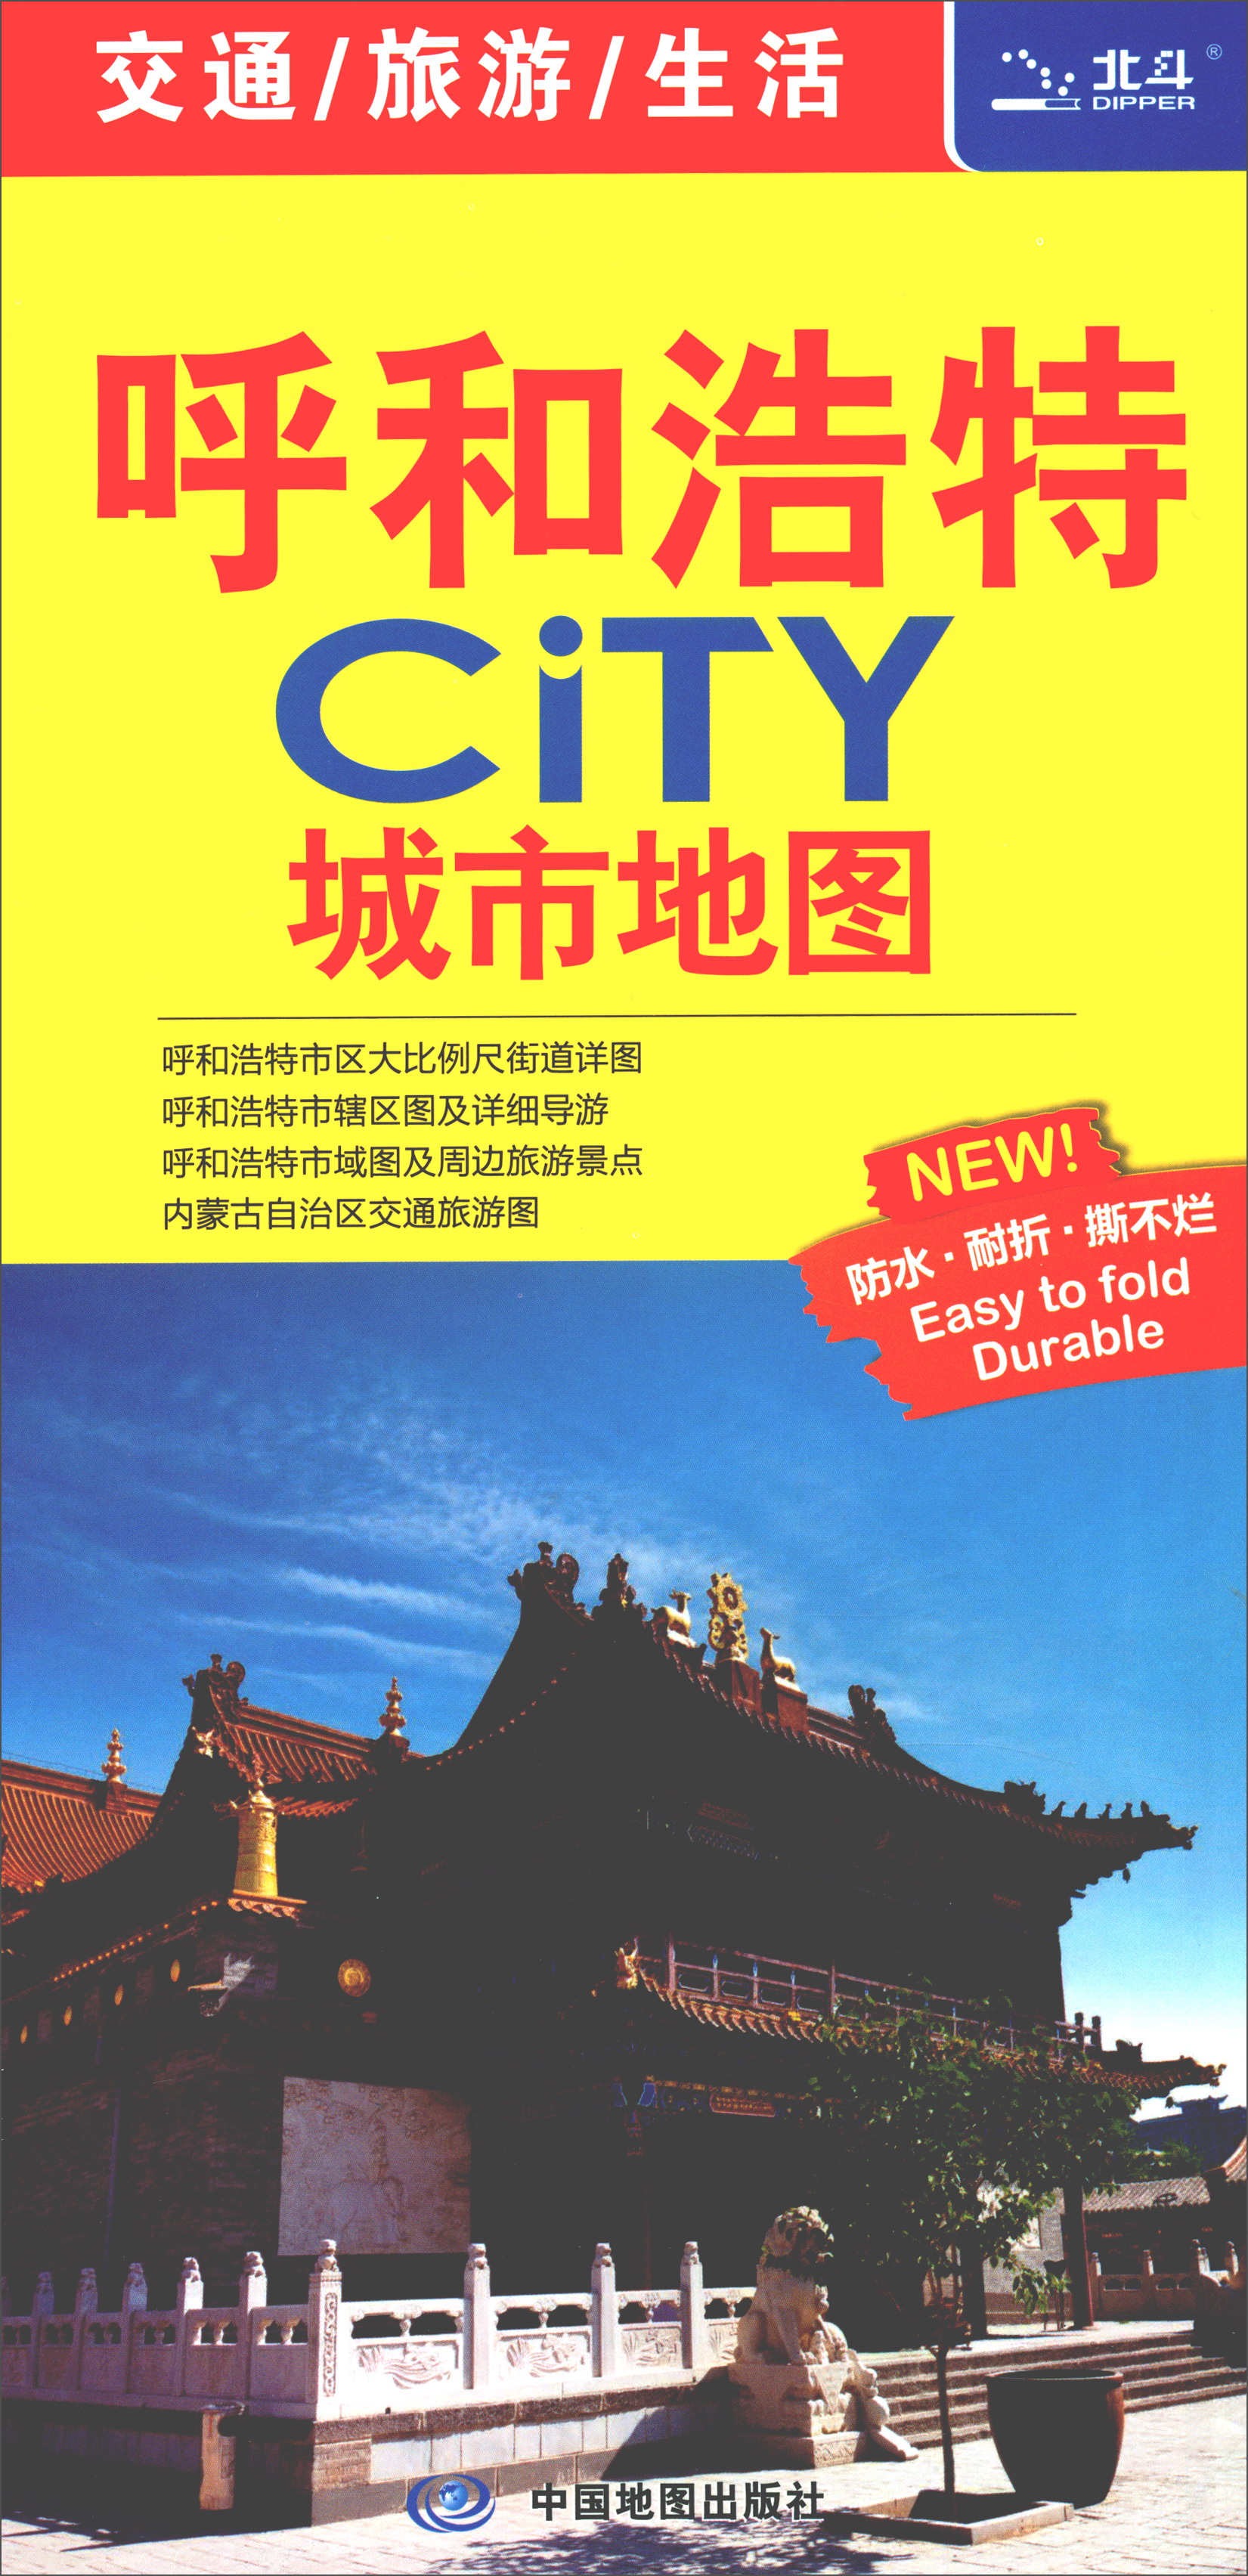 2018年呼和浩特CITY城市地图 kindle格式下载